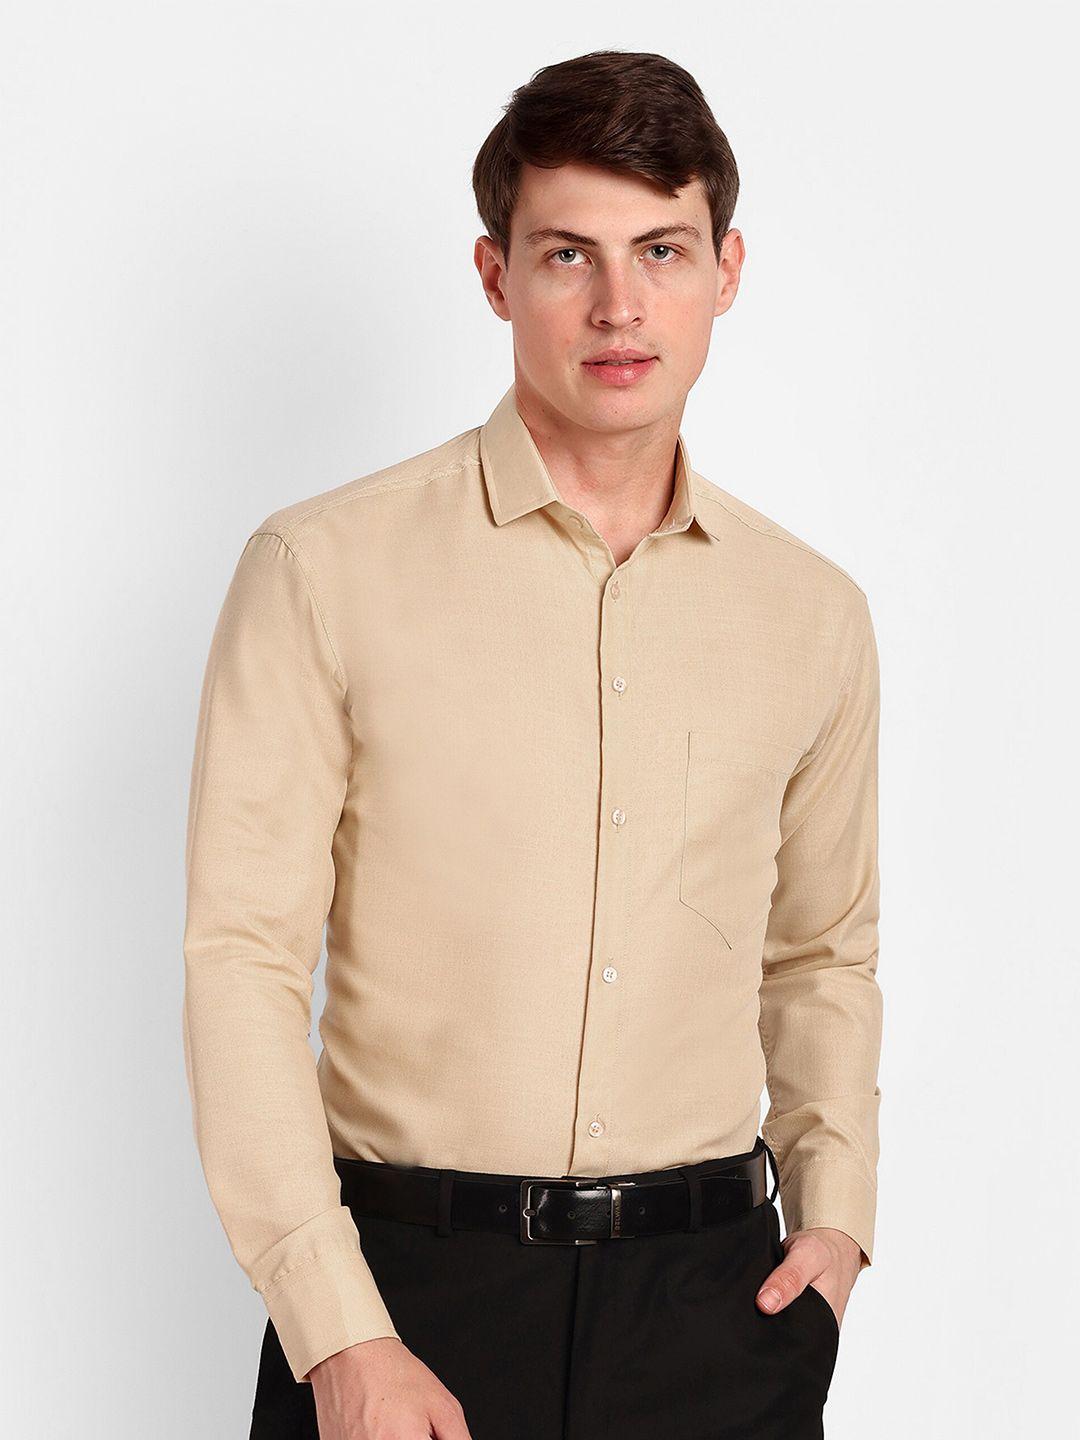 colorwings men beige comfort semi sheer formal shirt